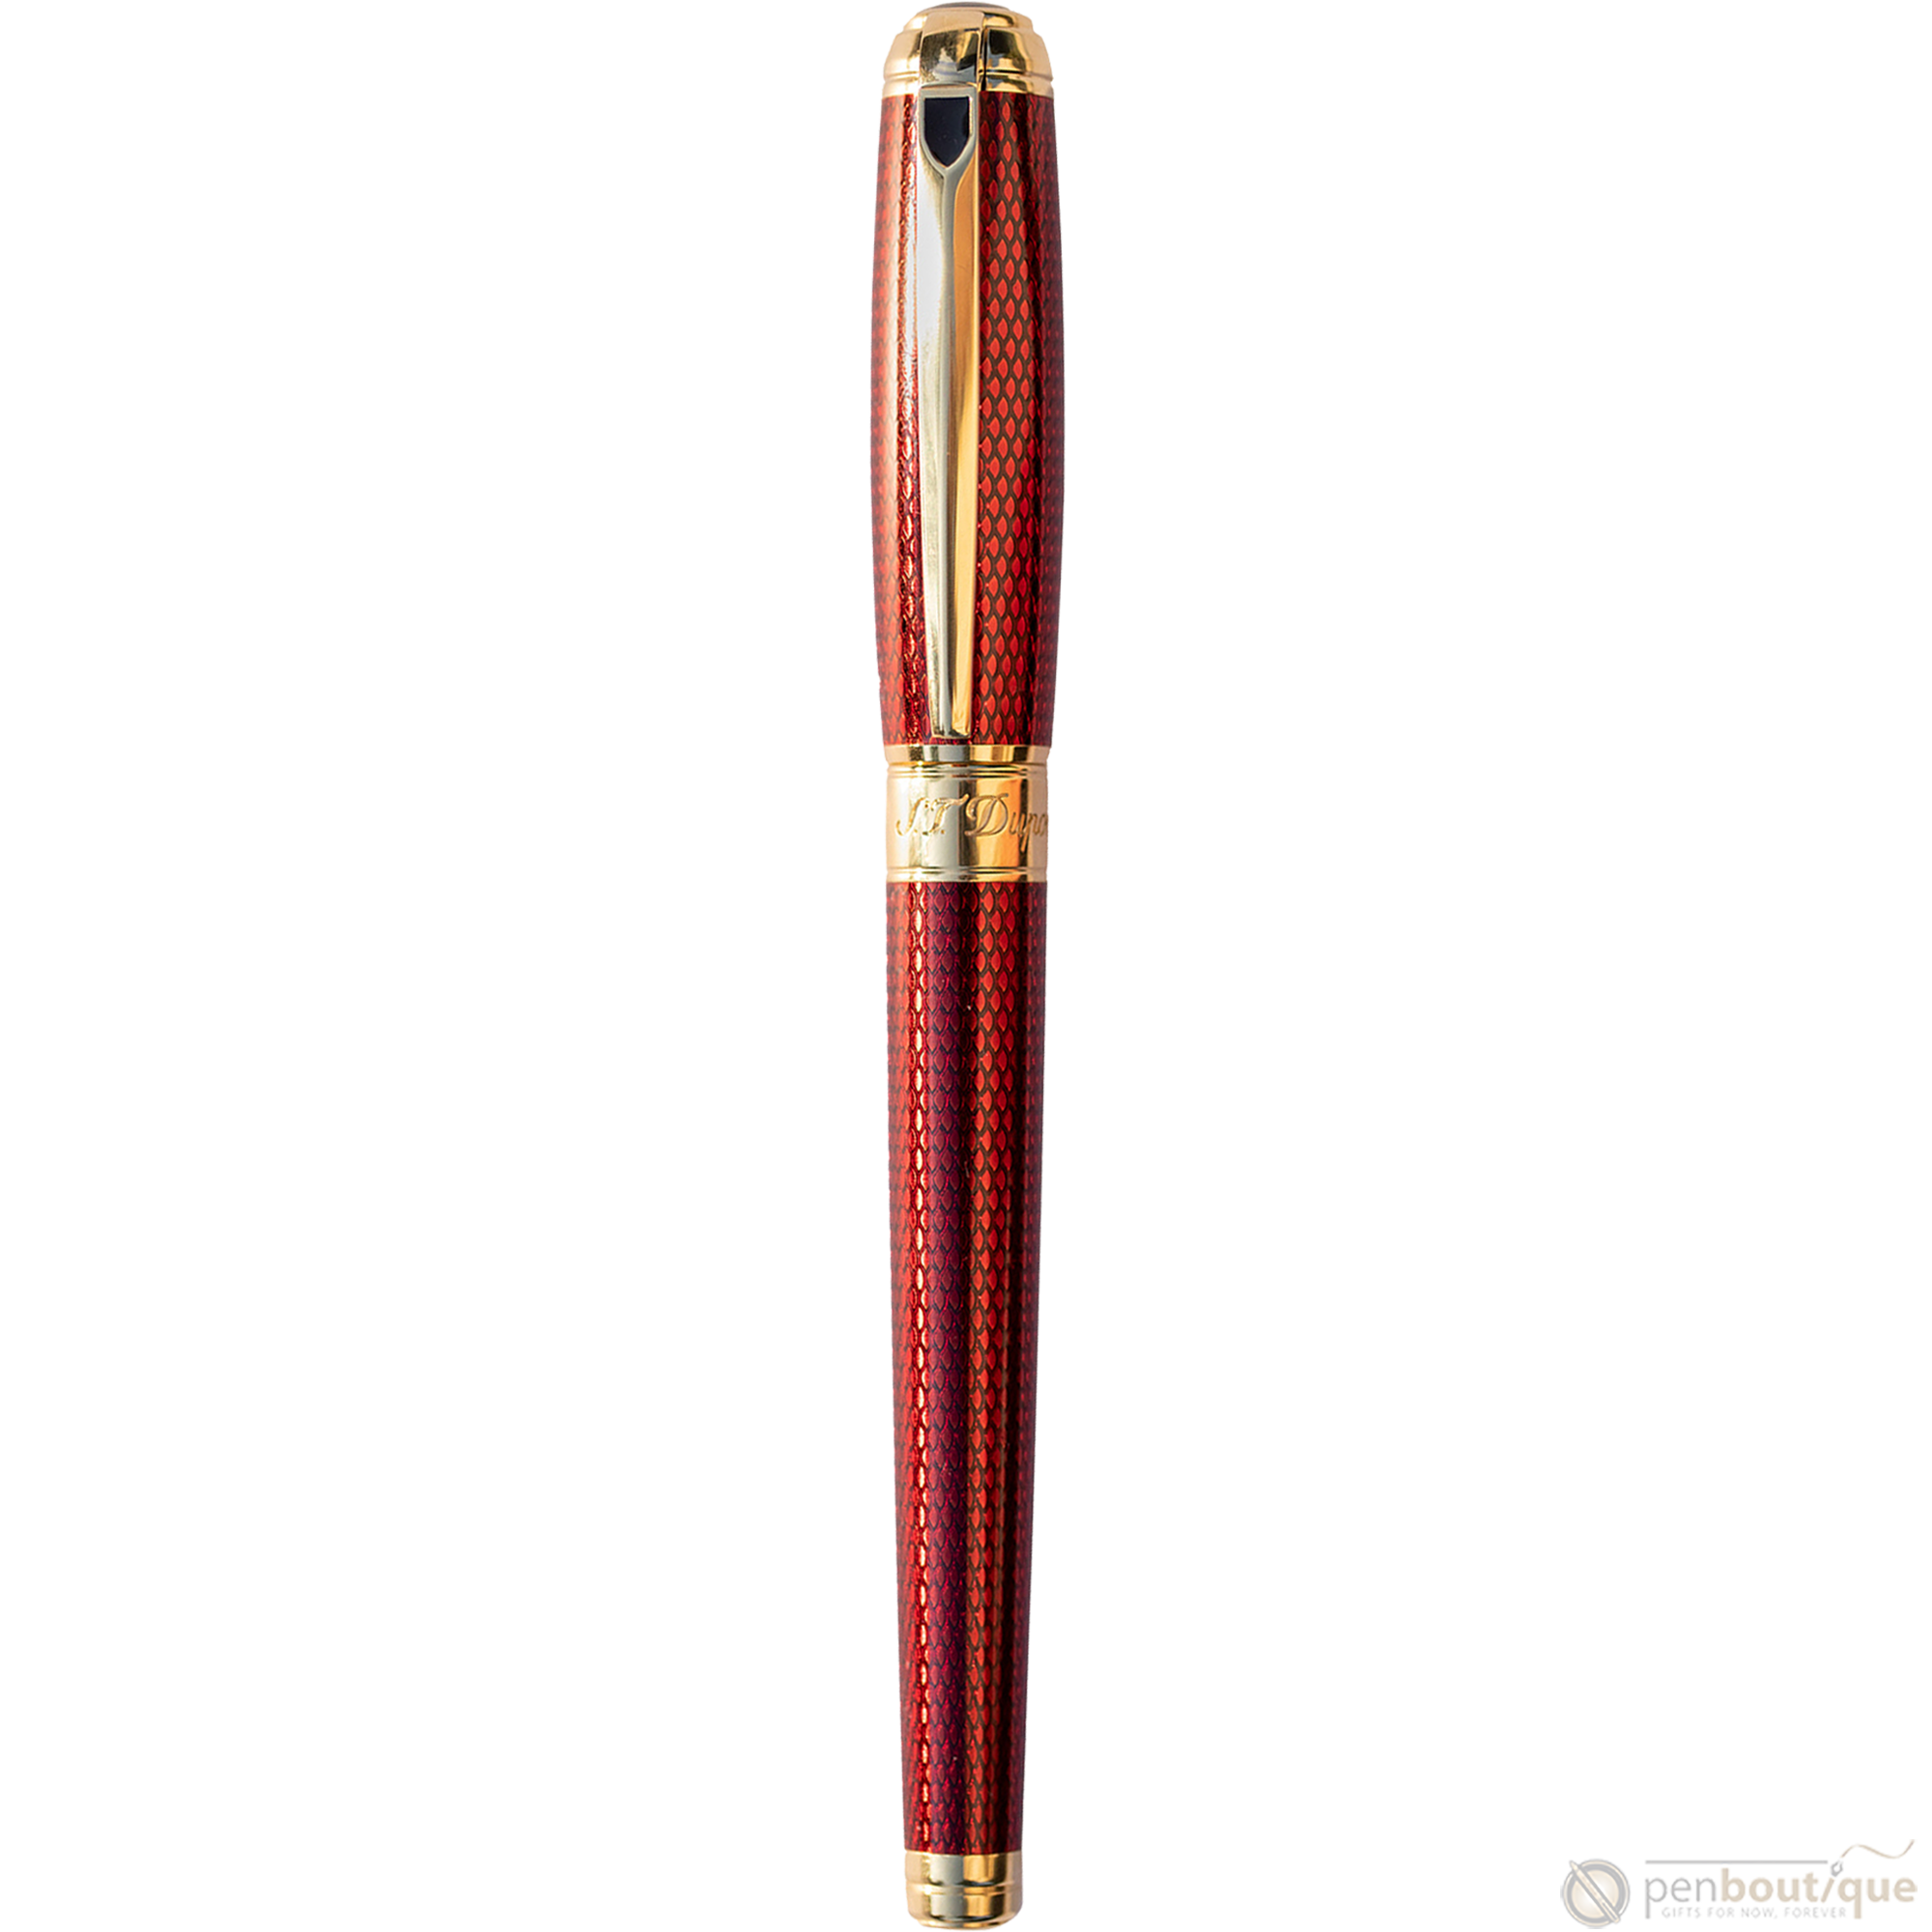 S T Dupont Line D Rollerball Pen - Diamond Guilloche - Ruby - Large-Pen Boutique Ltd